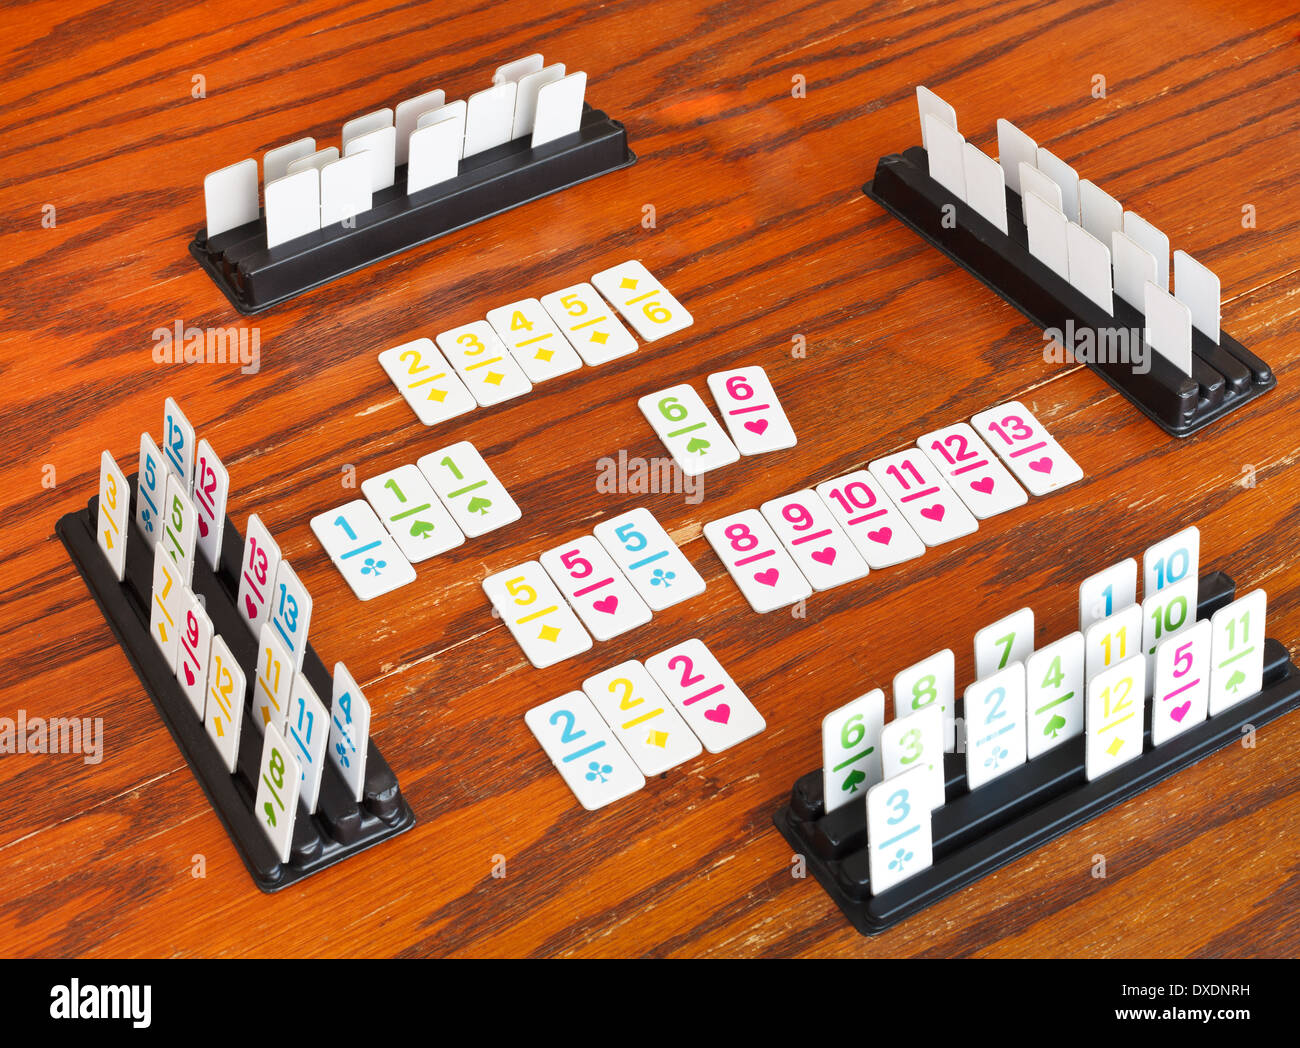 Jeu de Rami jeu de carte sur table en bois Banque D'Images